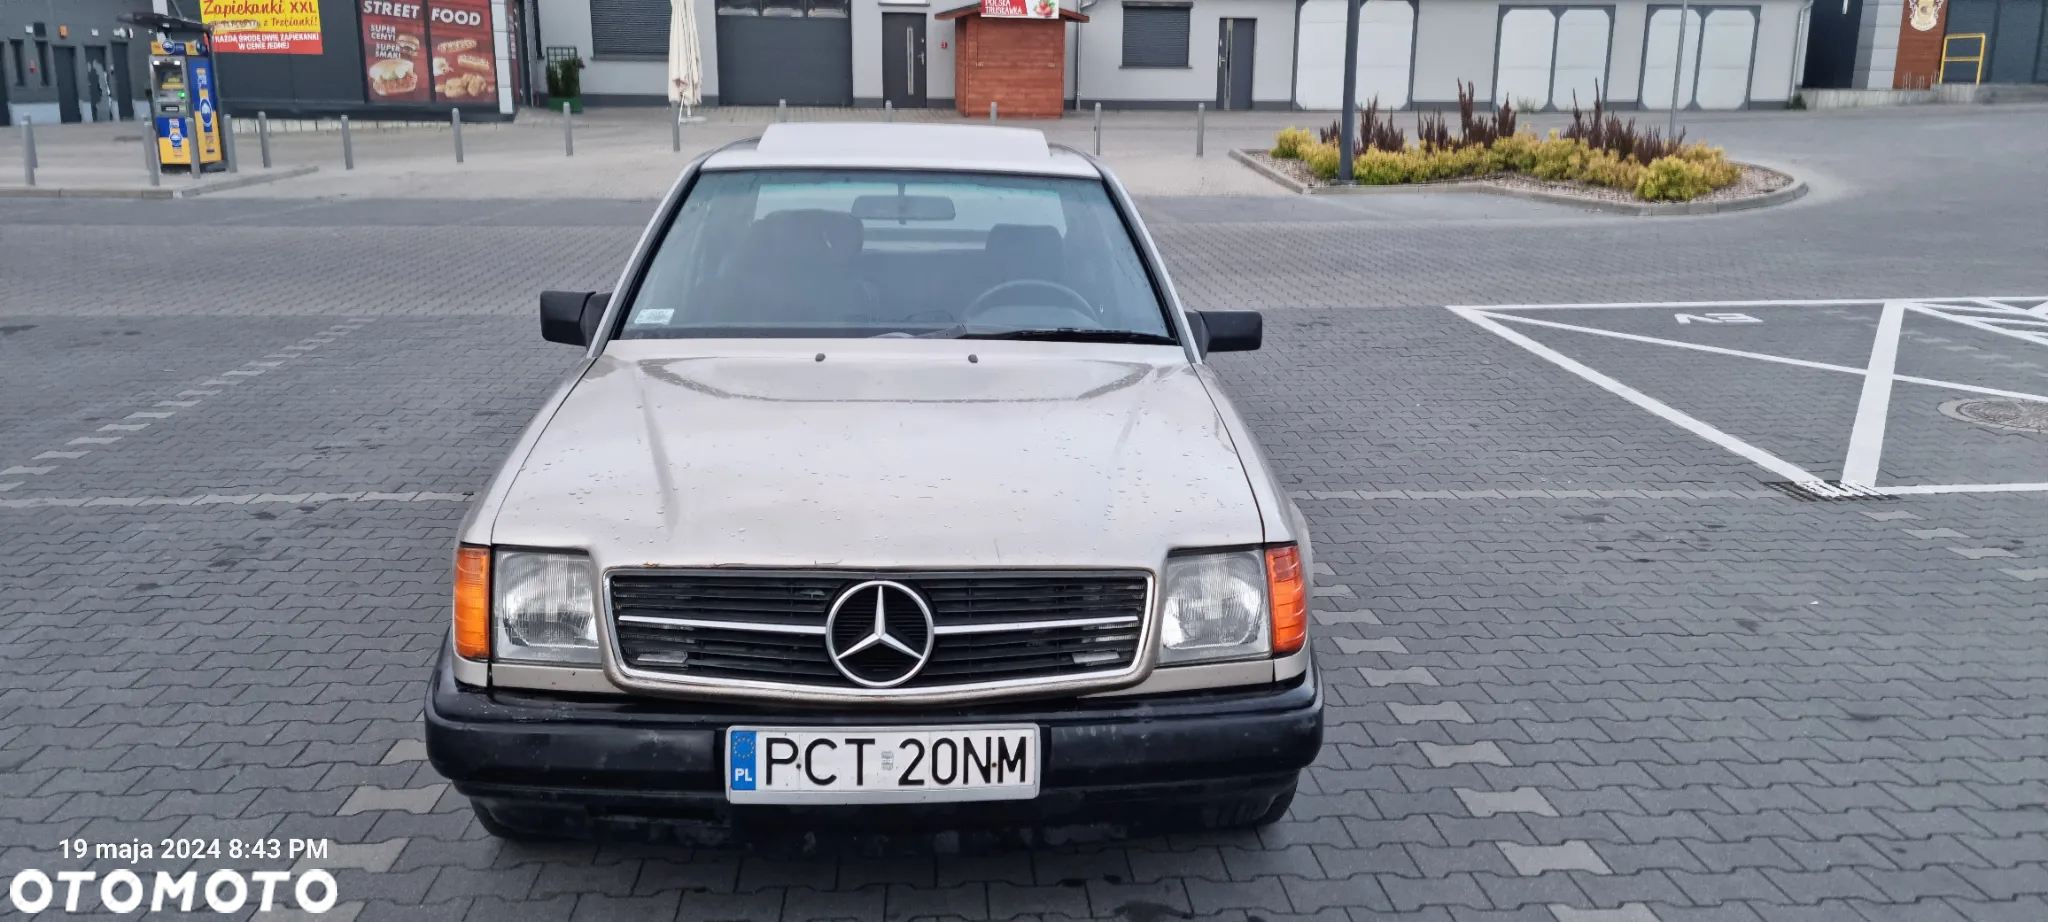 Mercedes-Benz W124 (1984-1993) - 19